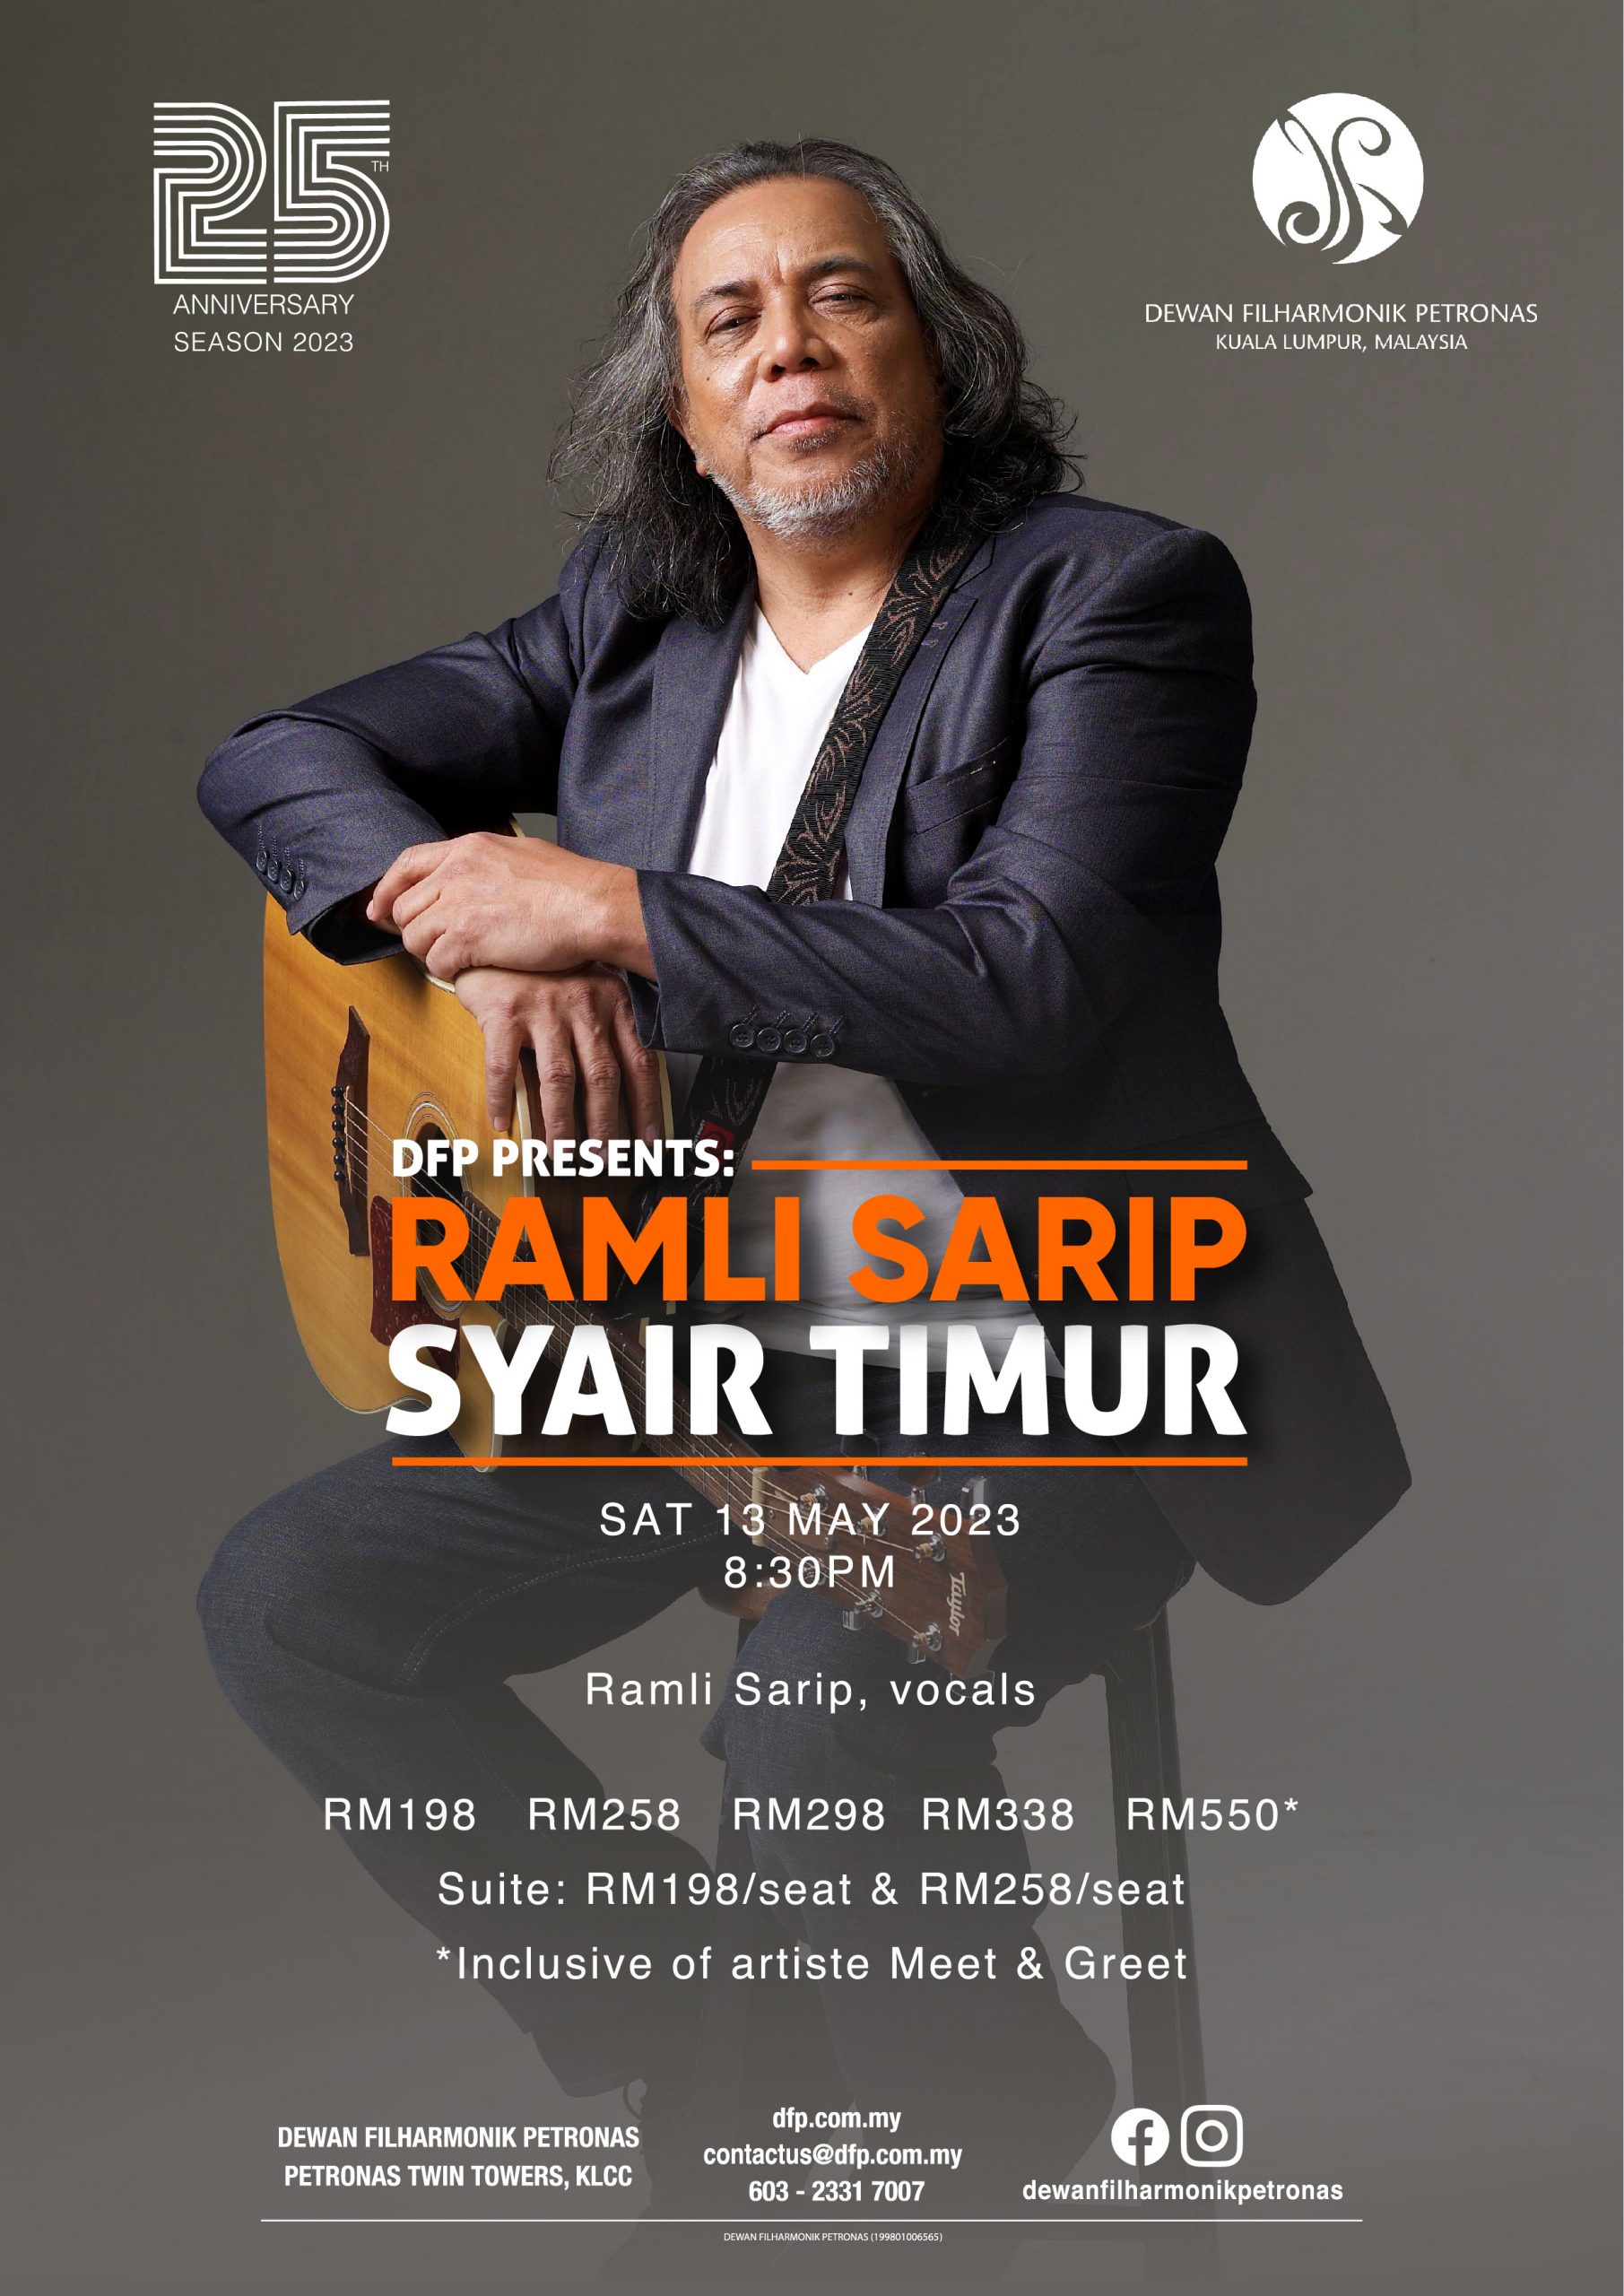 DFP PRESENTS: Ramli Sarip – Syair Timur